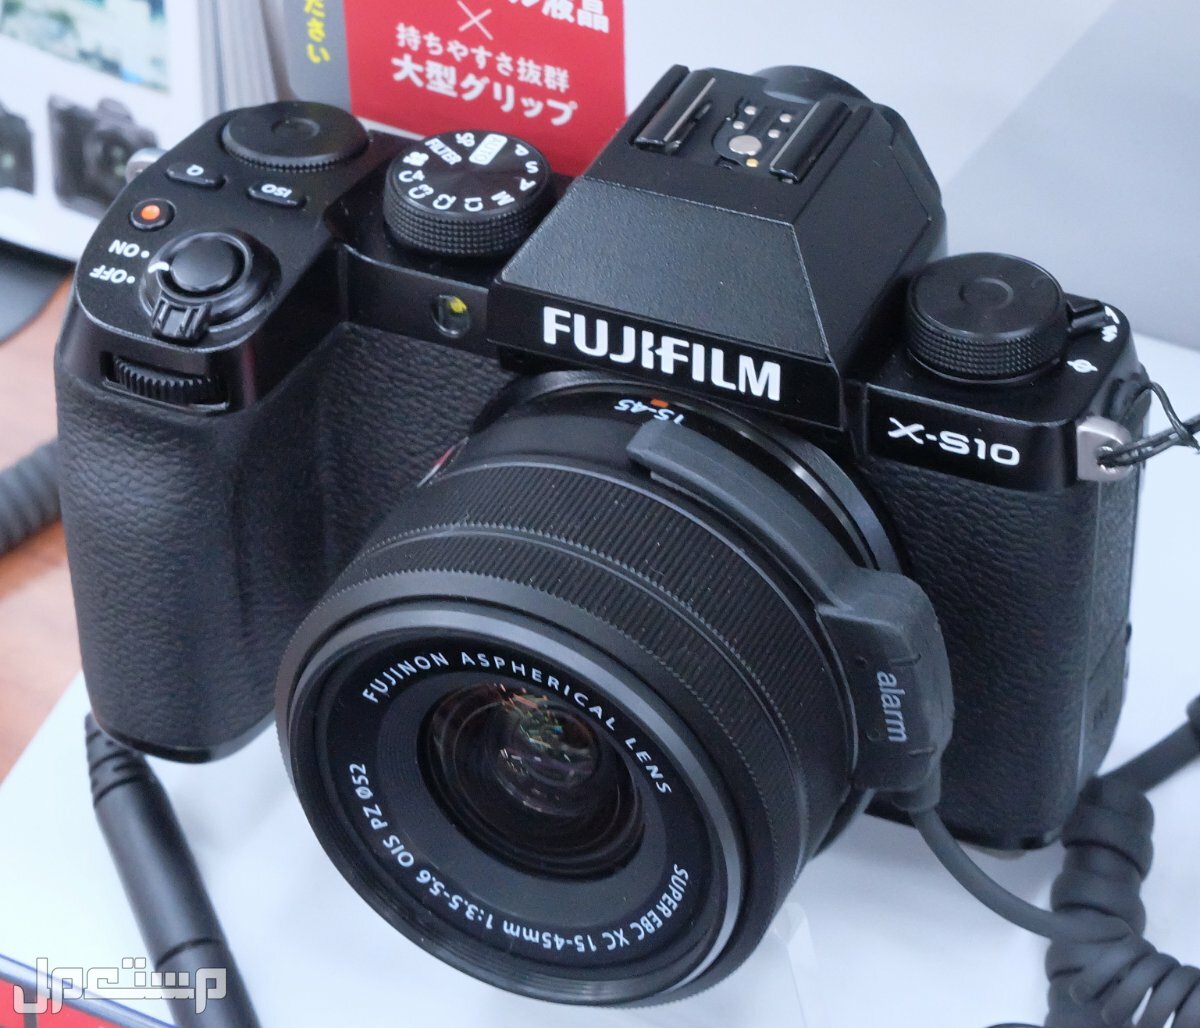 مواصفات ومميزات وعيوب كاميرات التصوير فوجي فيلم مواصفات كاميرا Fujifilm X-S10